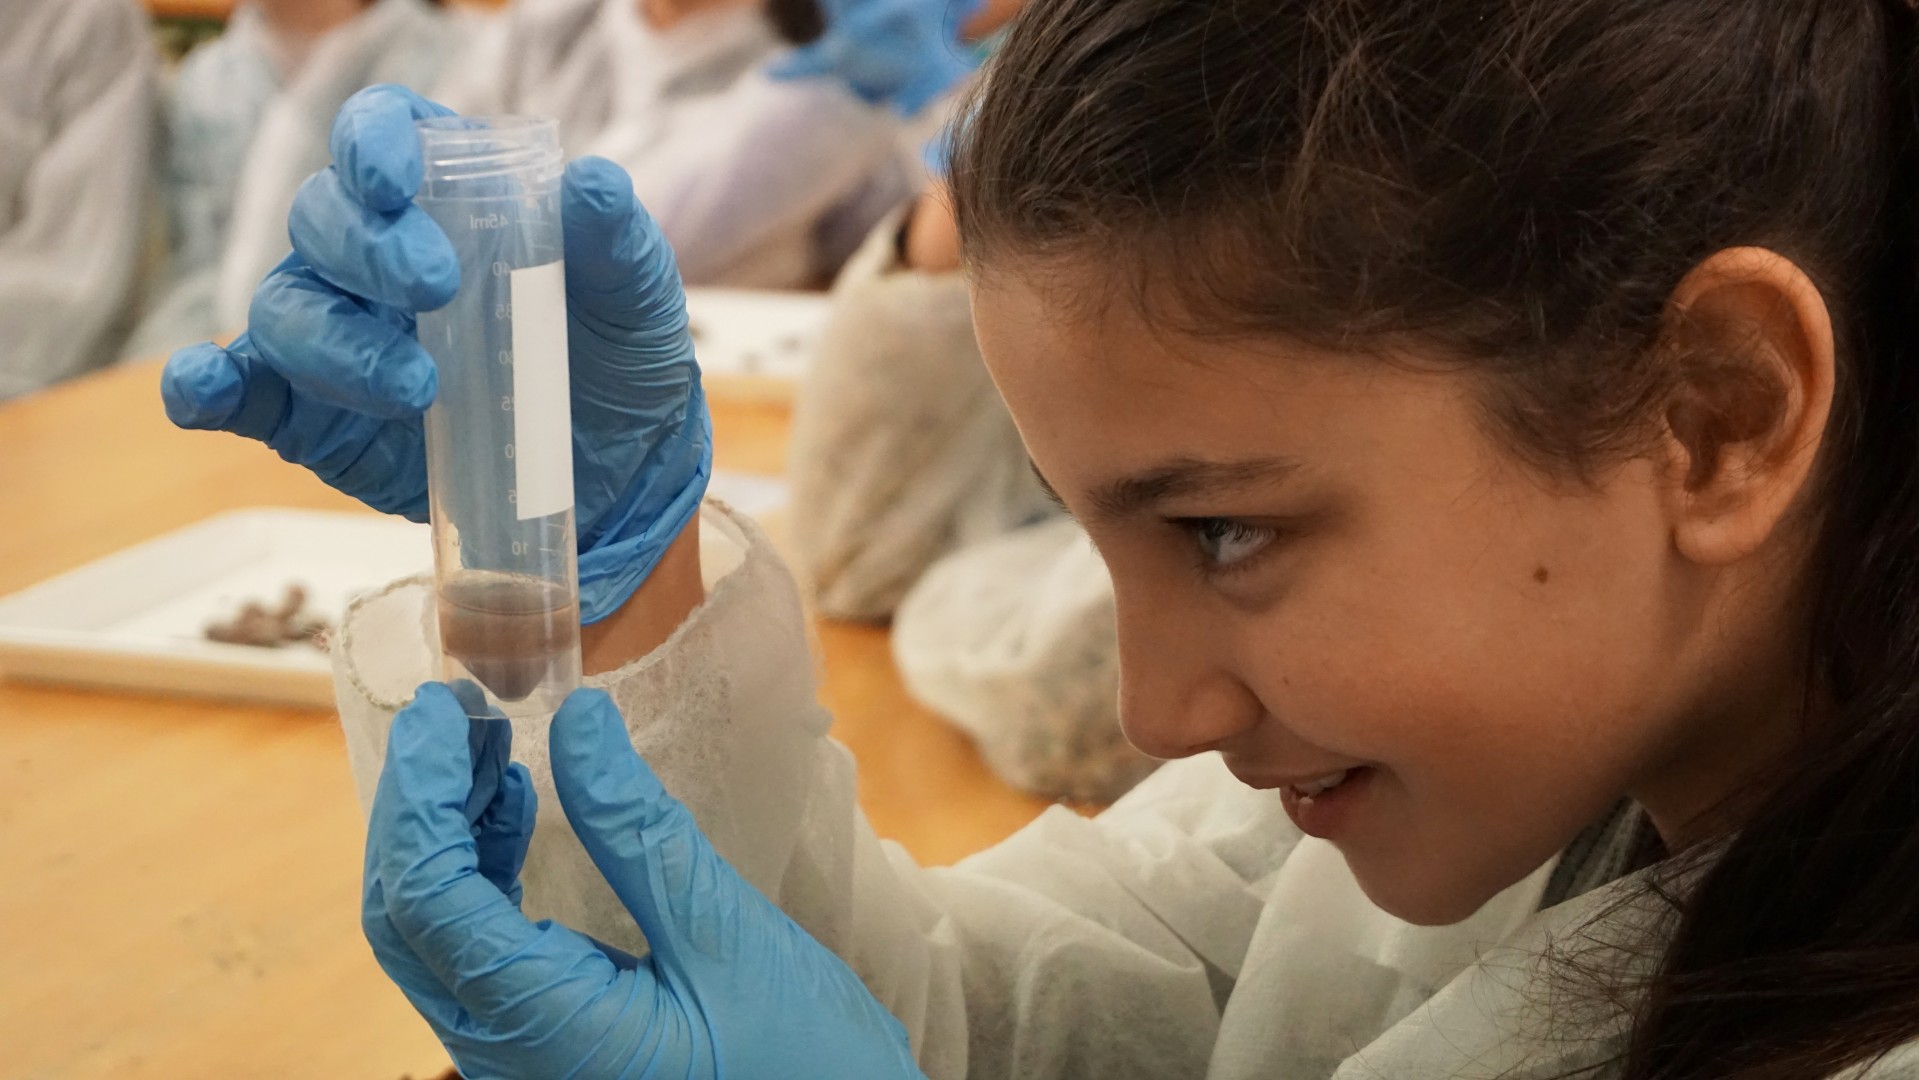 Un dels objectius dels tallers és fomentar les vocacions científiques entre les nenes.